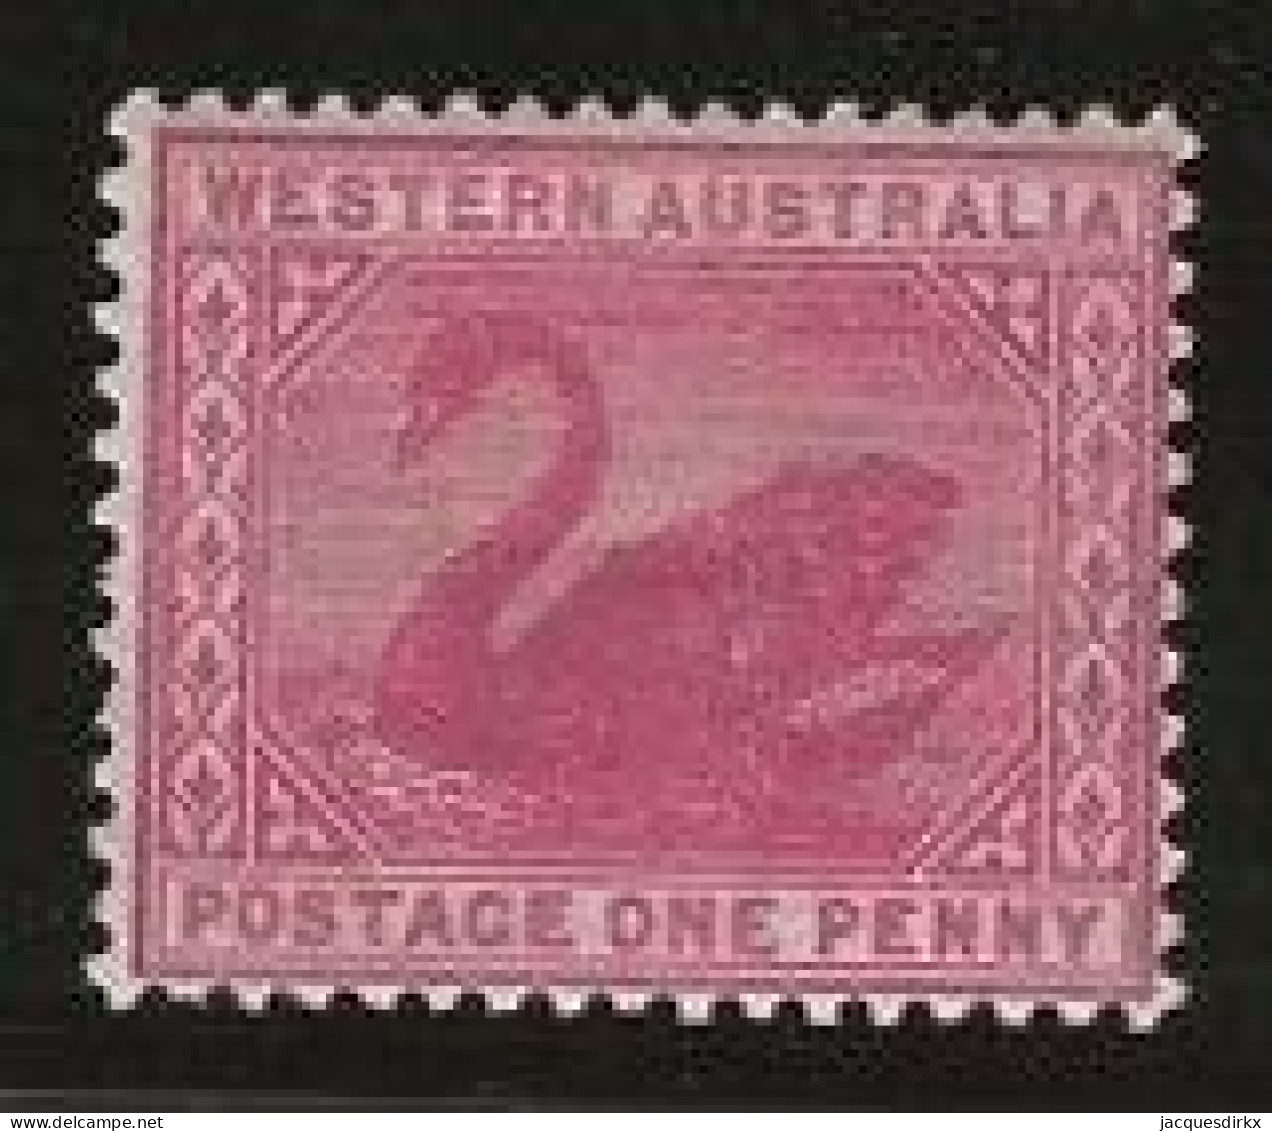 Western Australia     .   SG    .    112        .   *       .     Mint-hinged - Ungebraucht